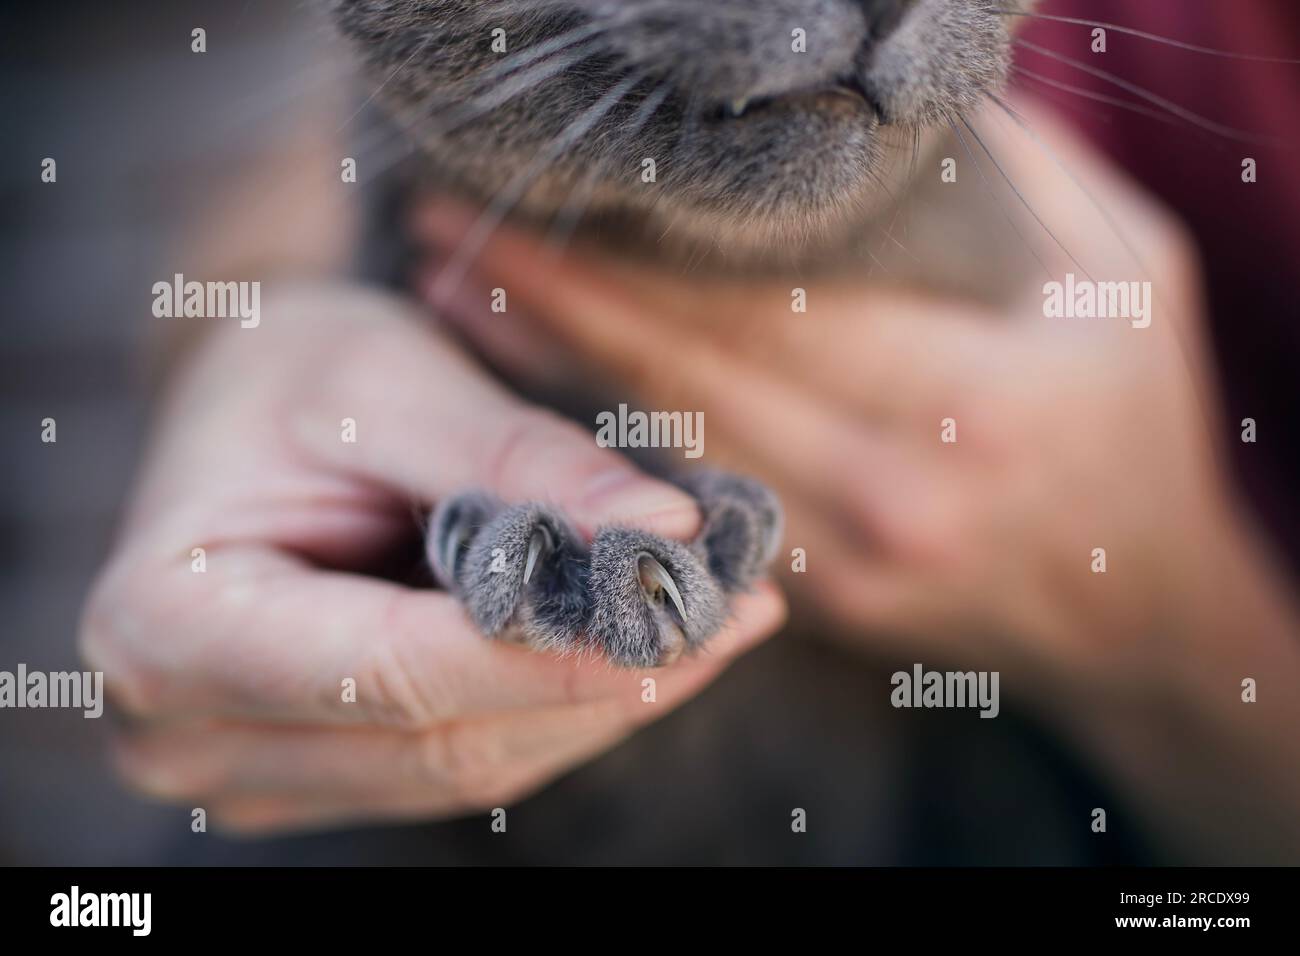 Uomo che tiene in mano il gatto britannico Shorthair che mostra lunghi artigli affilati. Temi animali domestici. Foto Stock